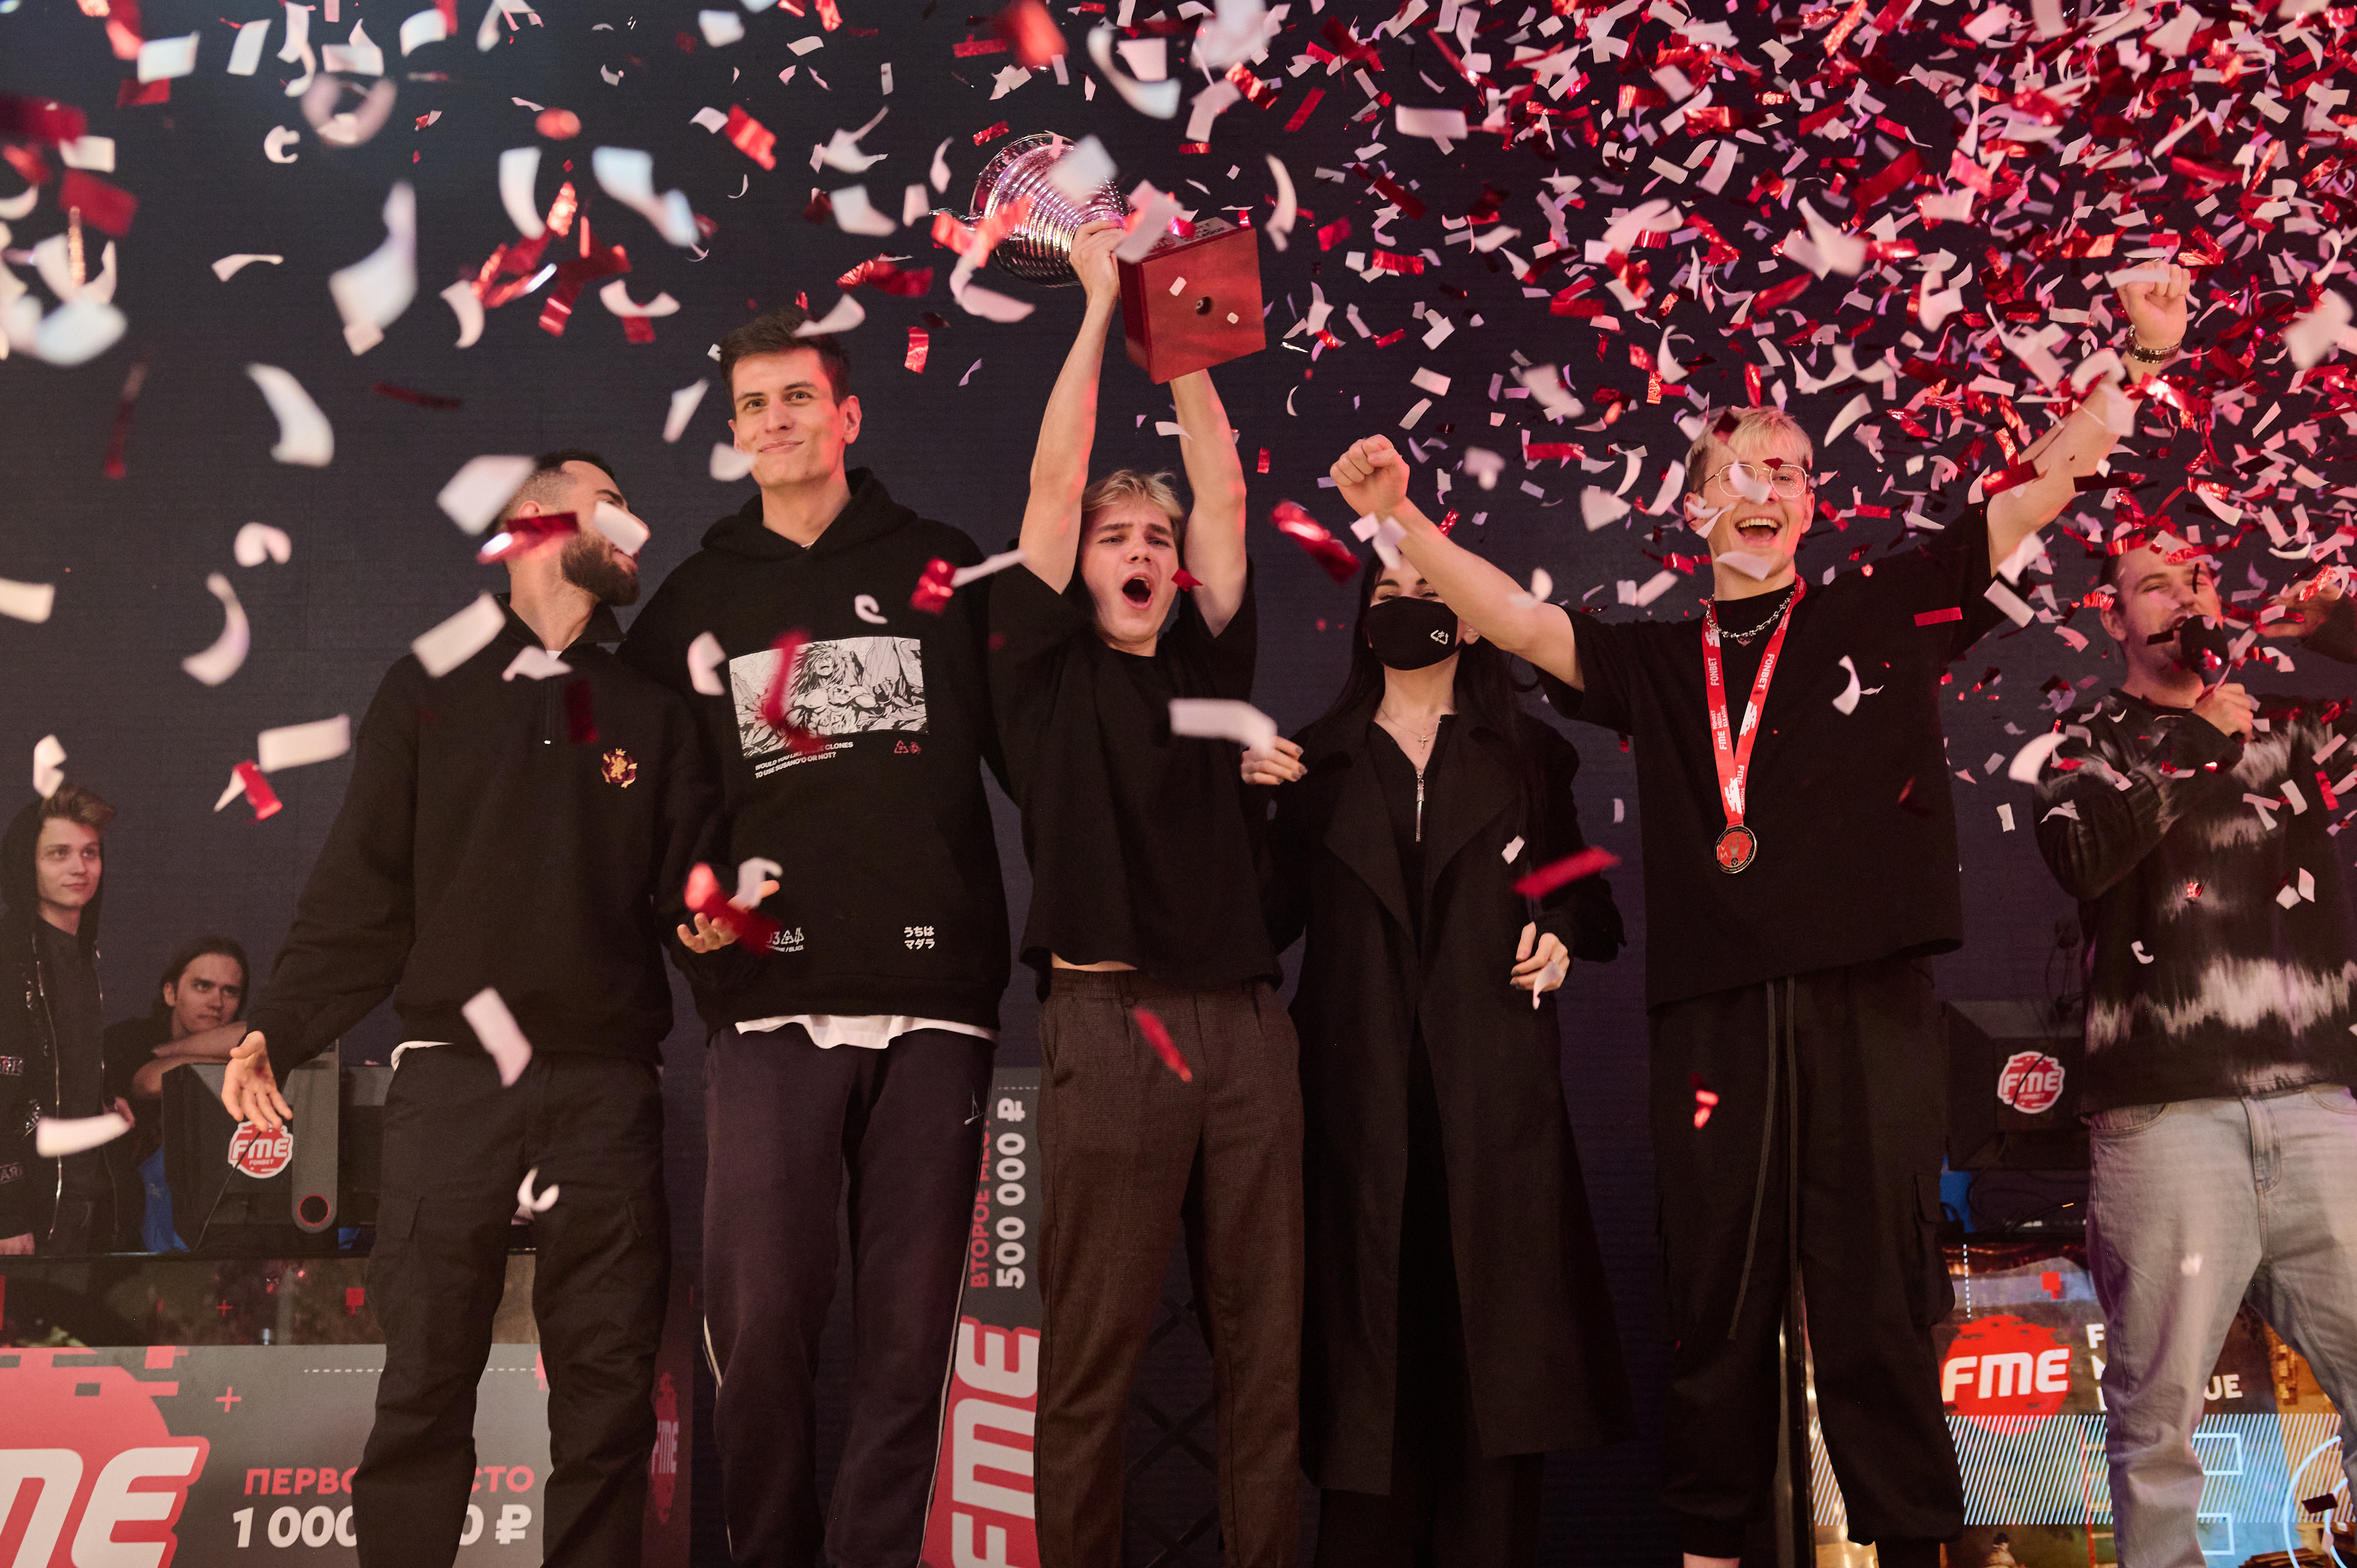 Команда fANDER стала чемпионом пятого сезона FONBET MEDIA ELEAGUE